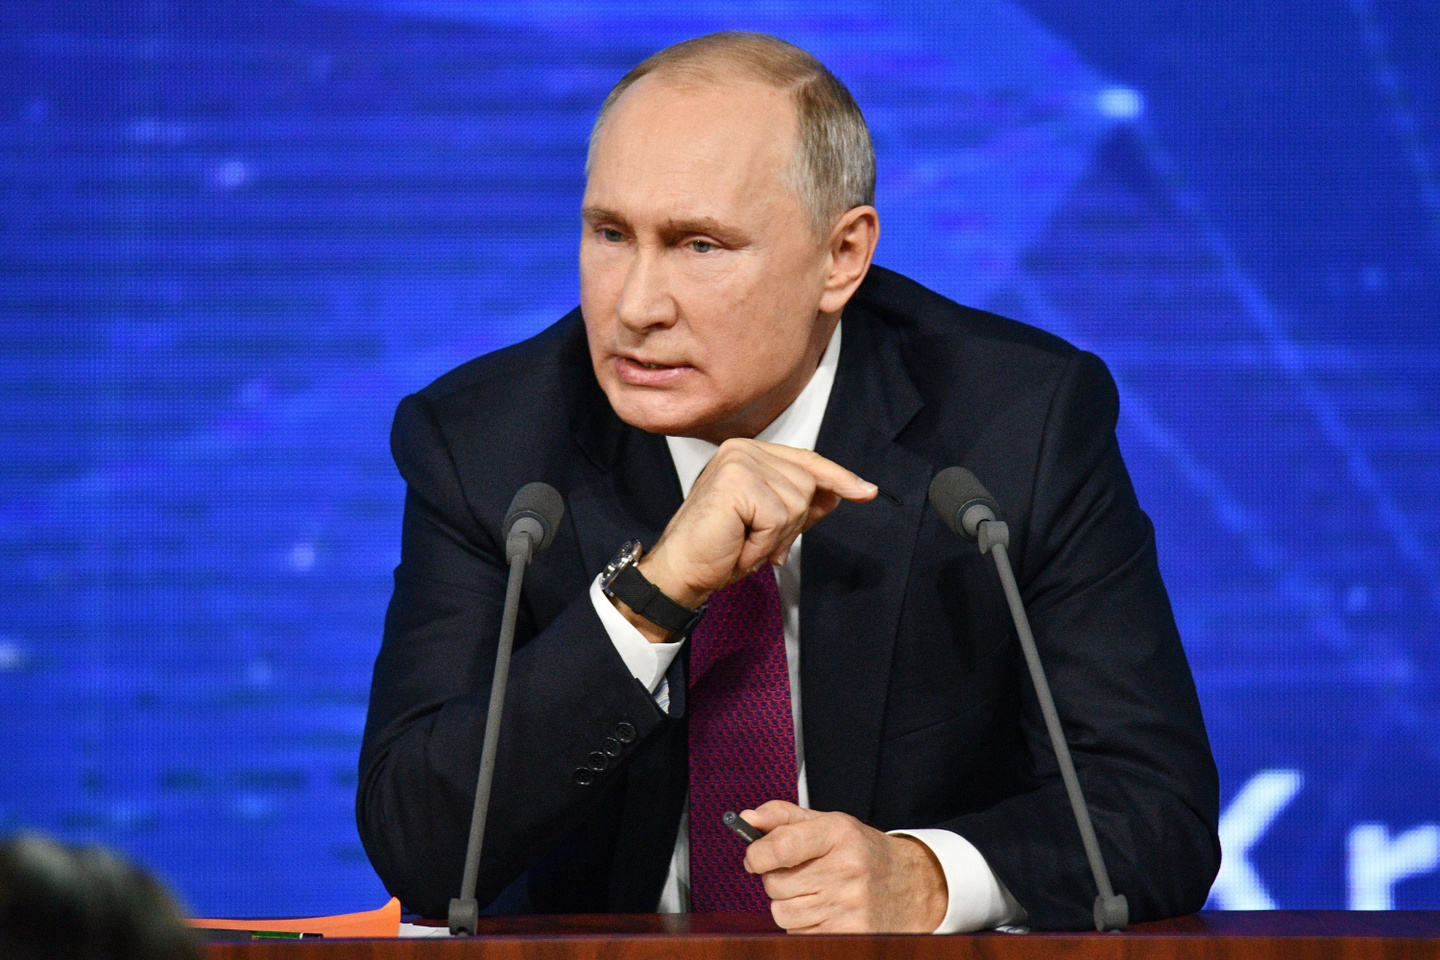  Важное заявление президента: Путин высказался о возможности новой волны мобилизации в РФ 